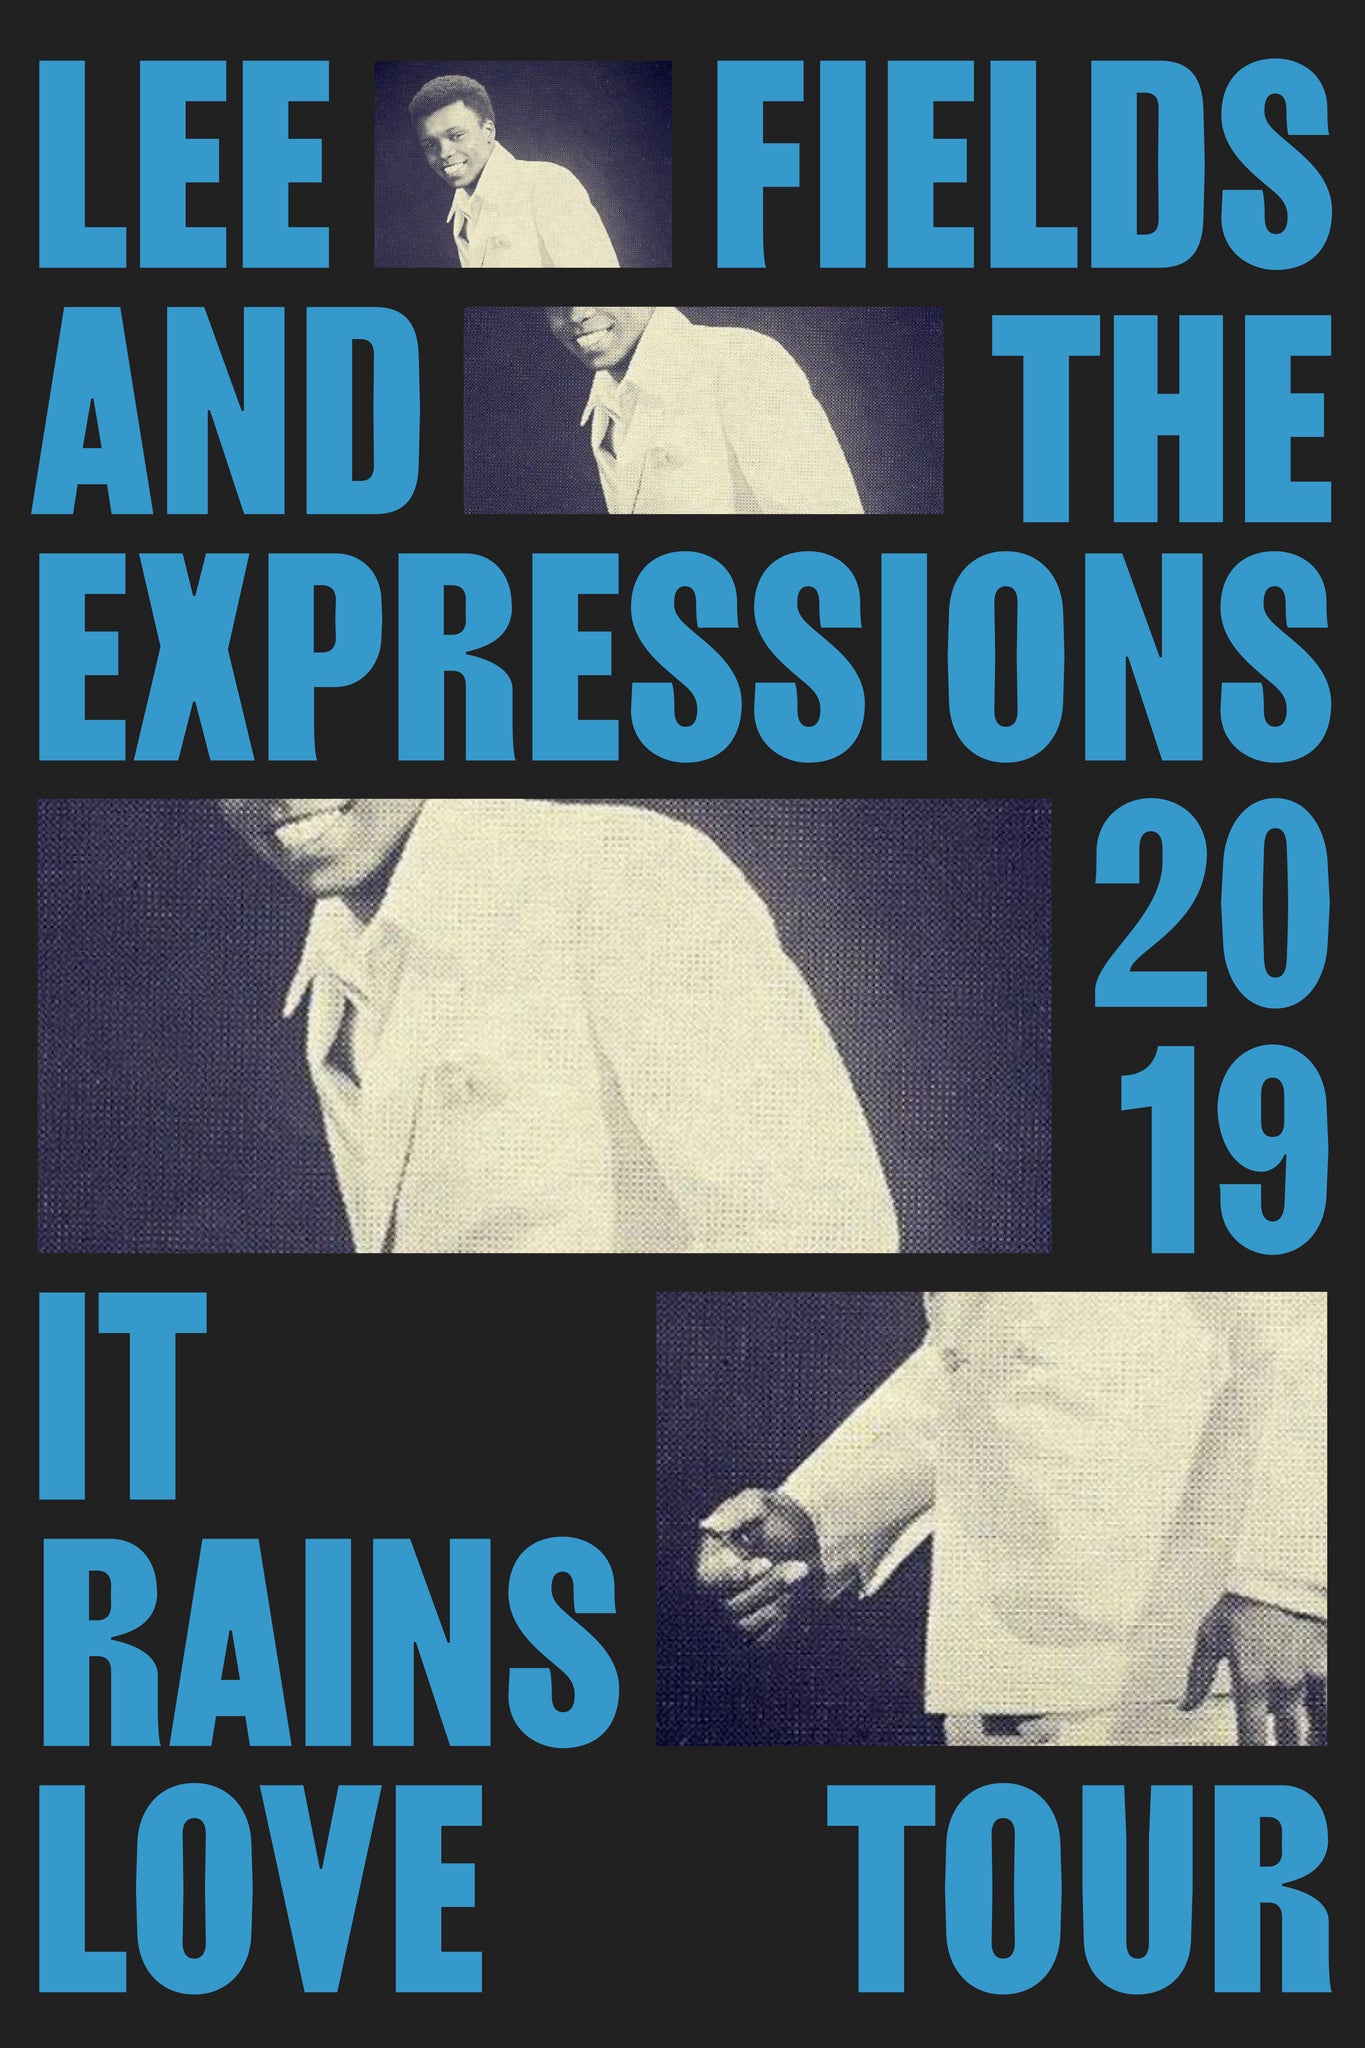 Lee Fields - It Rains Love 2019 Tour Poster